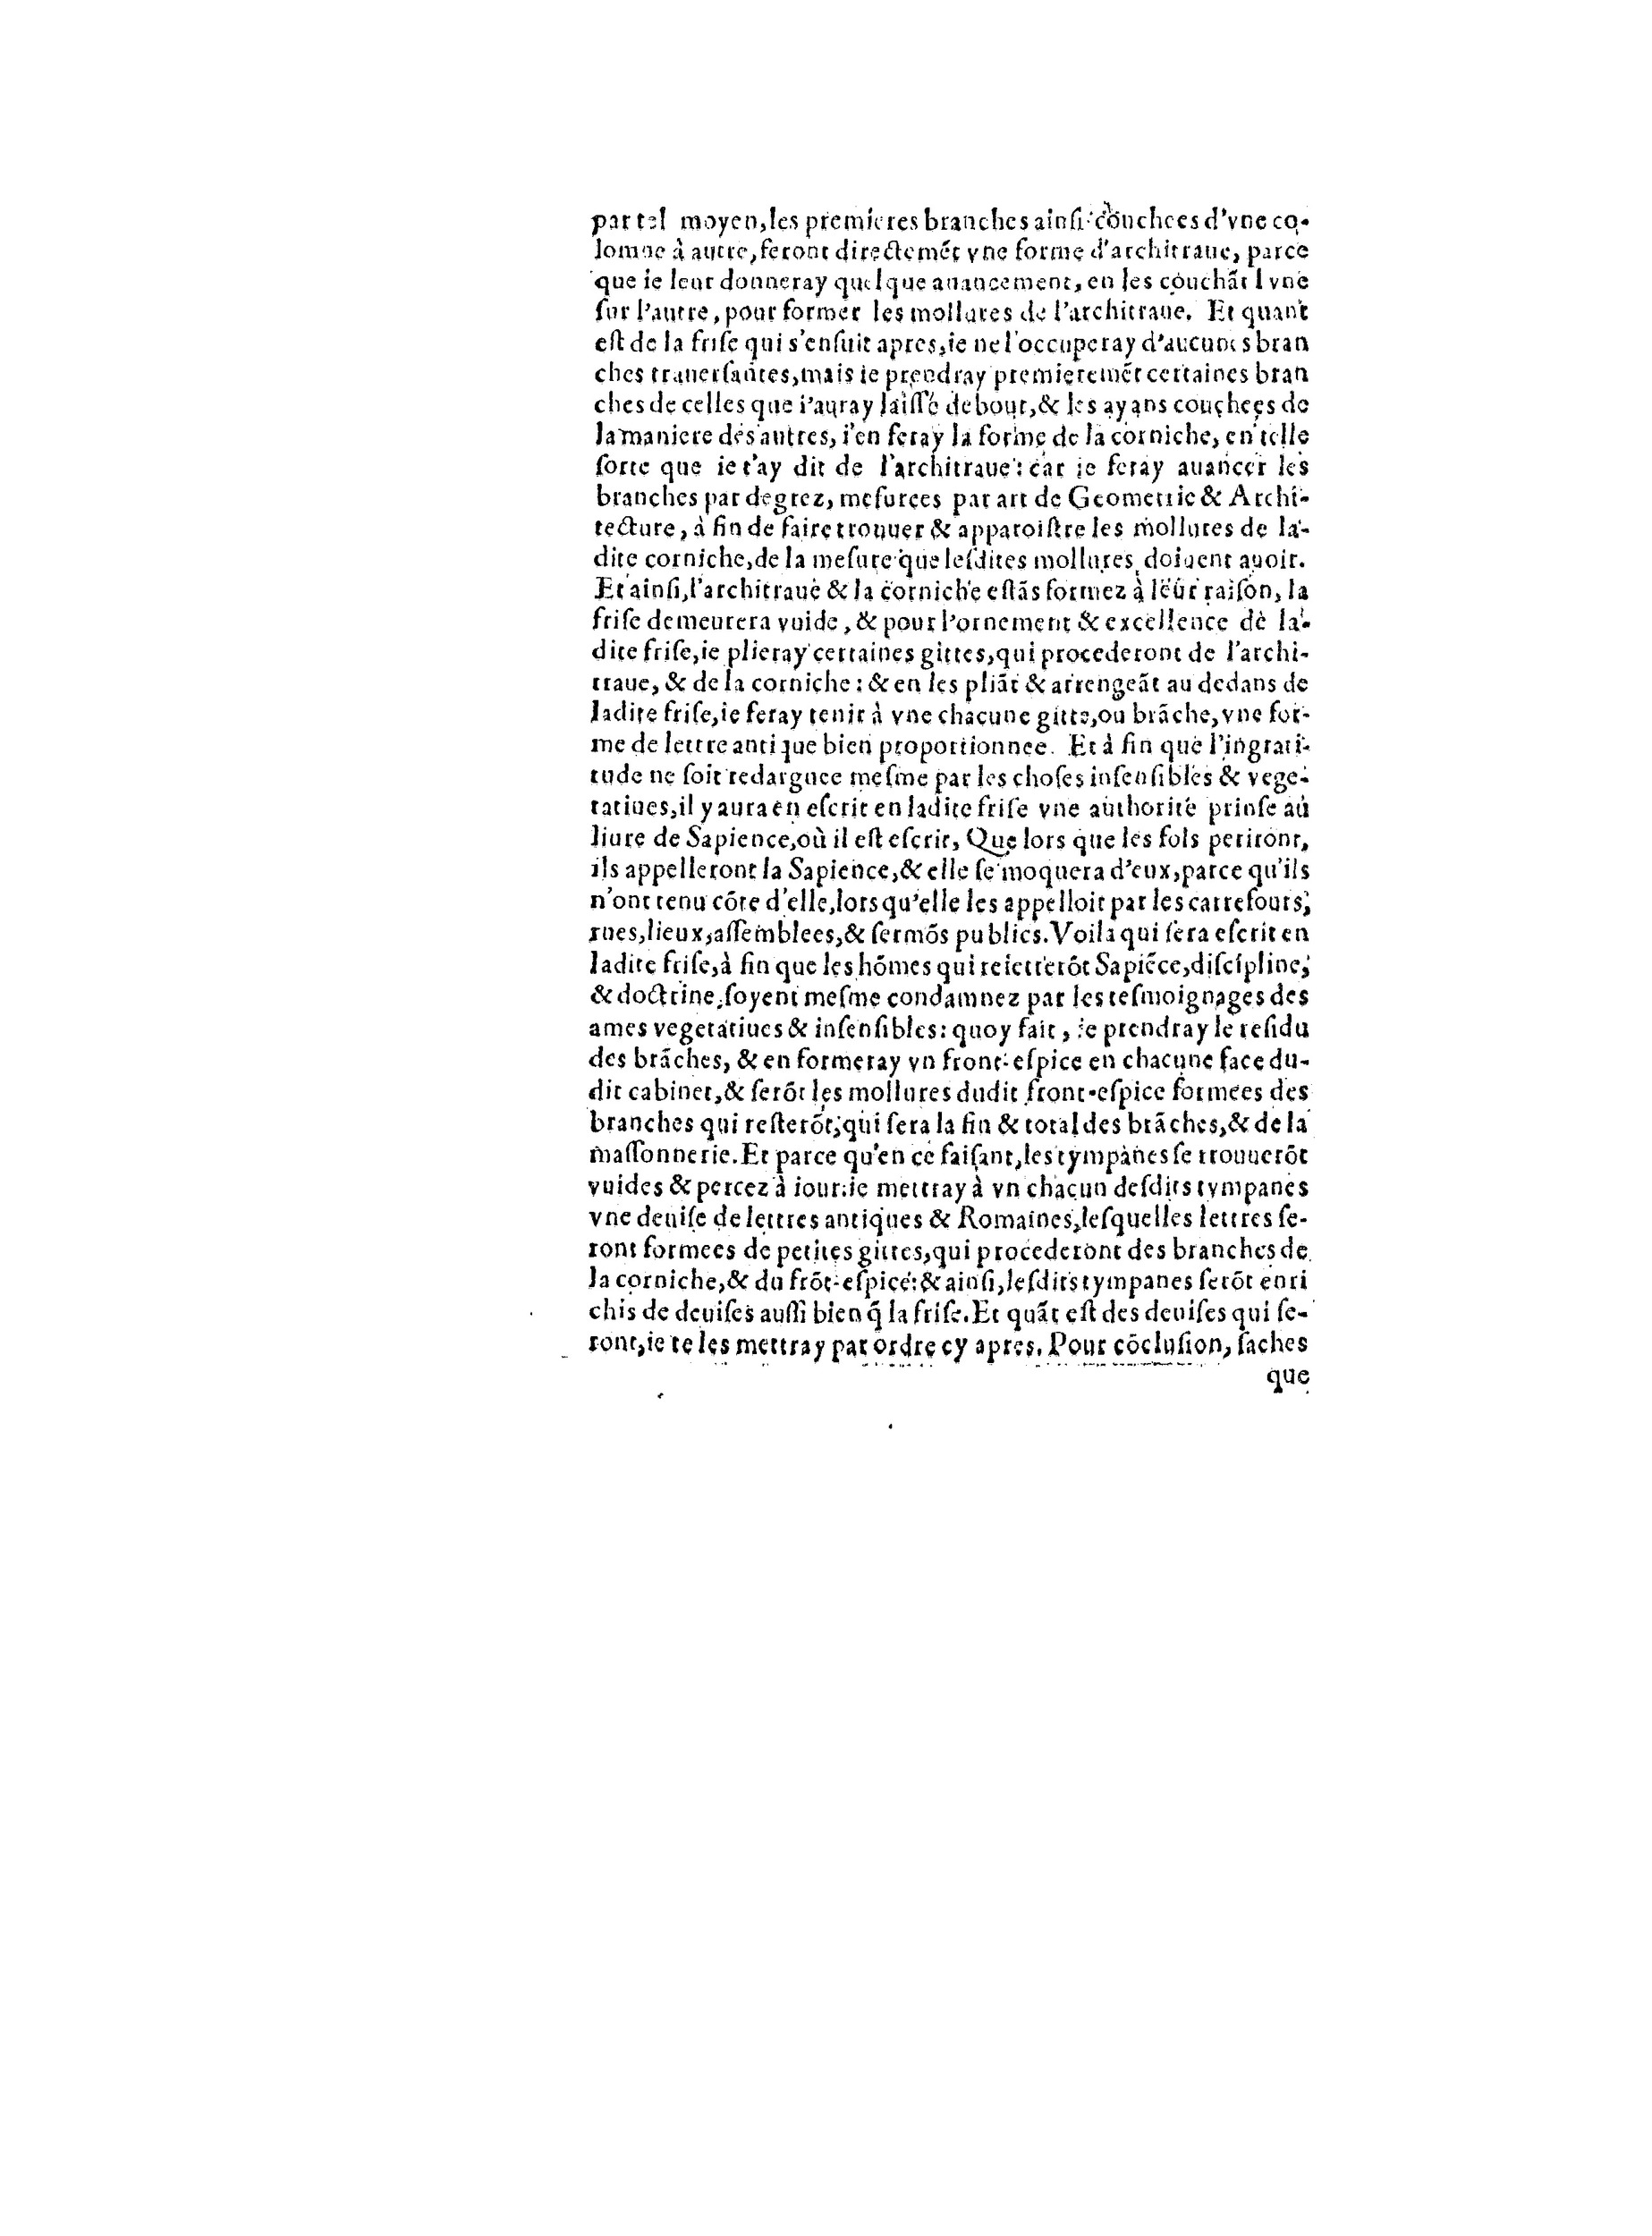 1563 Recepte veritable Berton_BNF_Page_073.jpg